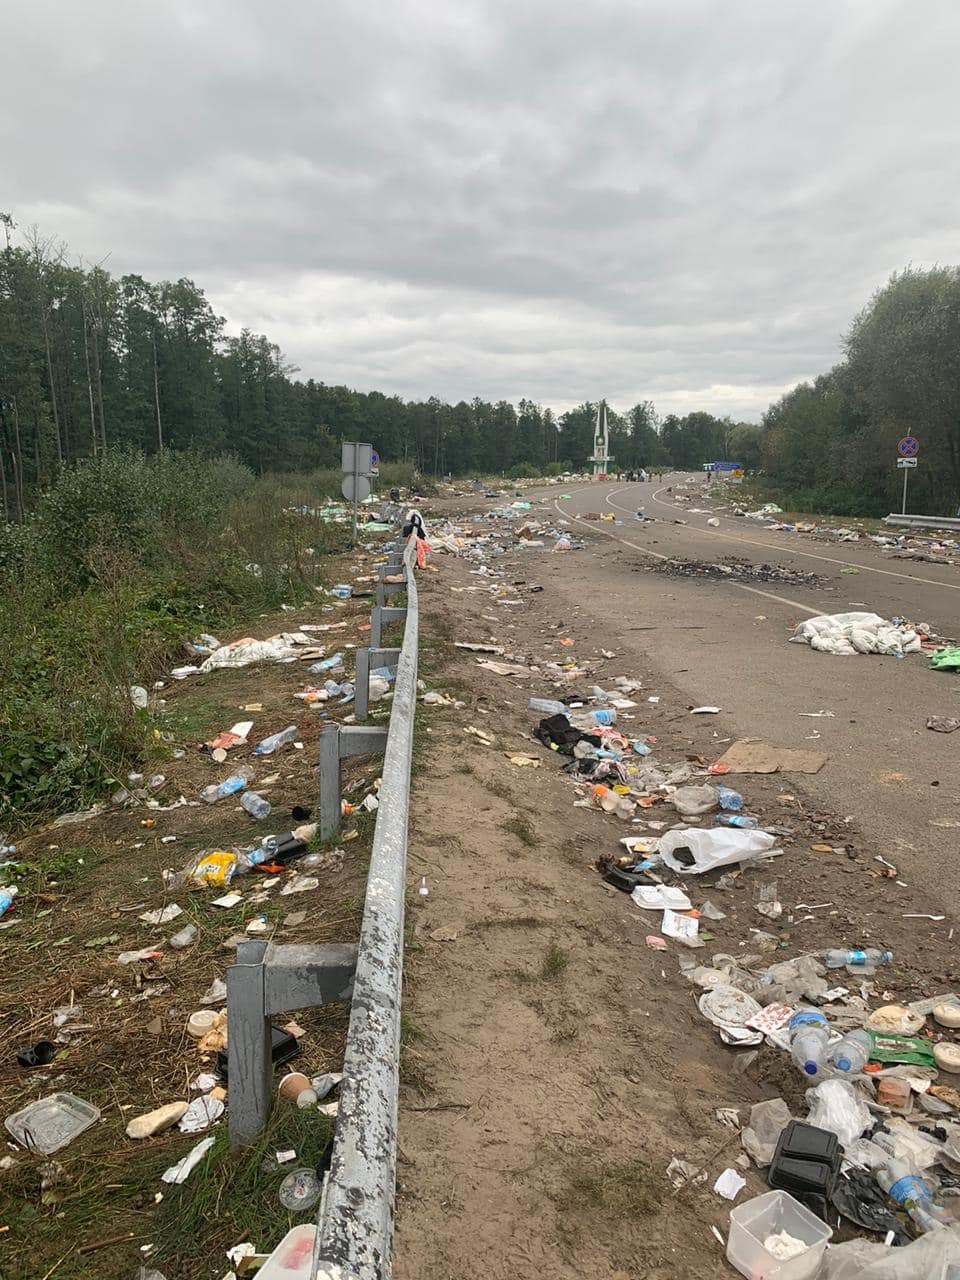 "Придется убирать". Хасиды освободили территорию на границе с Беларусью и оставили кучу мусора. Фото: Геращенко